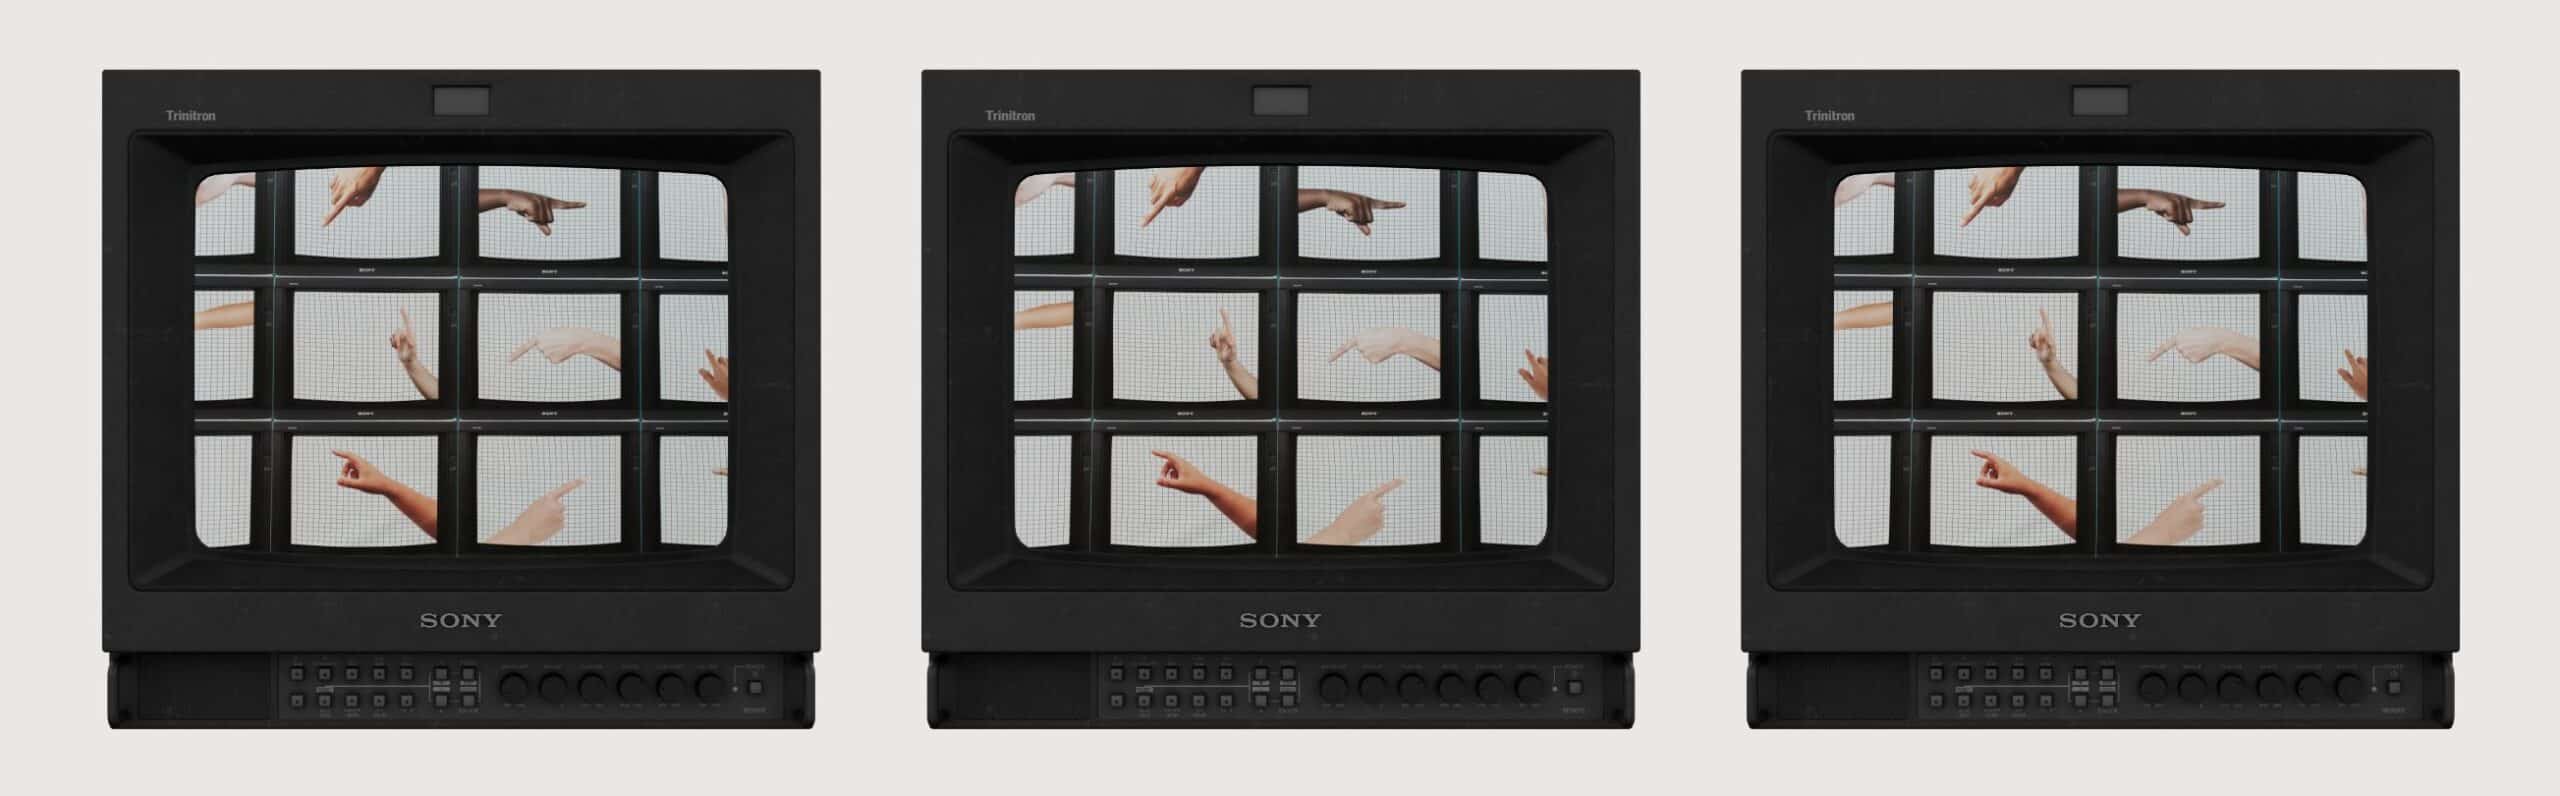 hands in tv screens